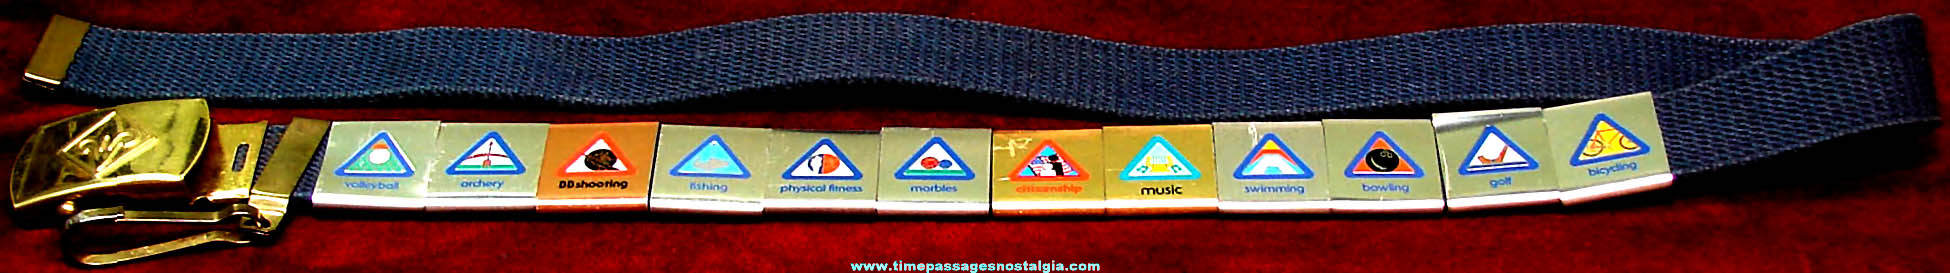 Old Webelos Uniform Belt with (12) Belt Loop Award Badges